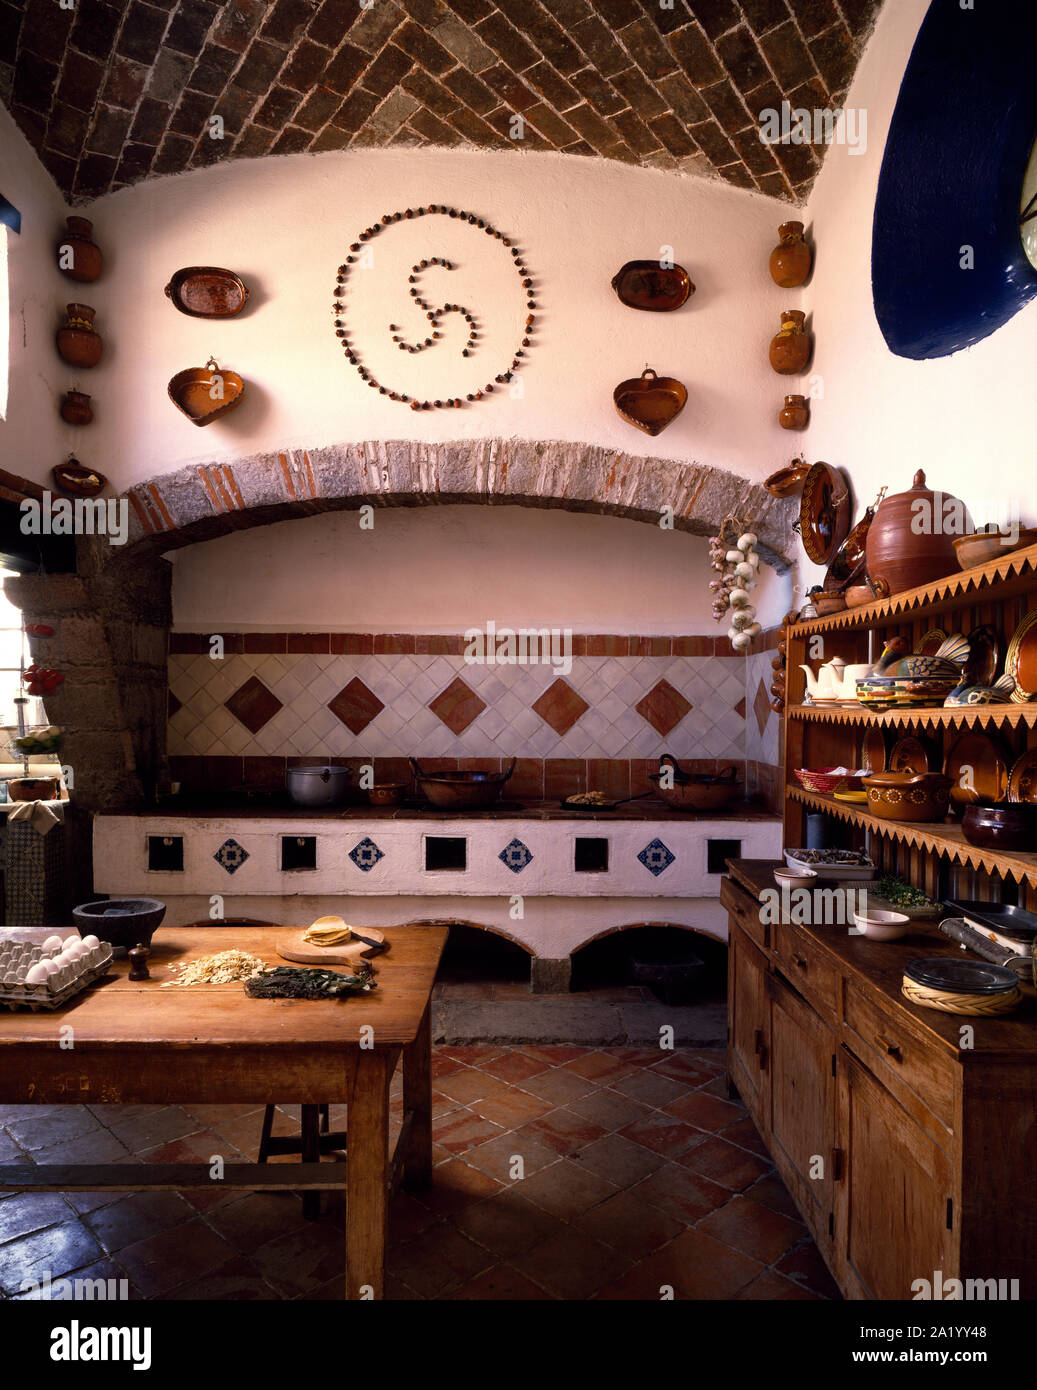 Cocina mexicana fotografías e imágenes de alta resolución - Alamy